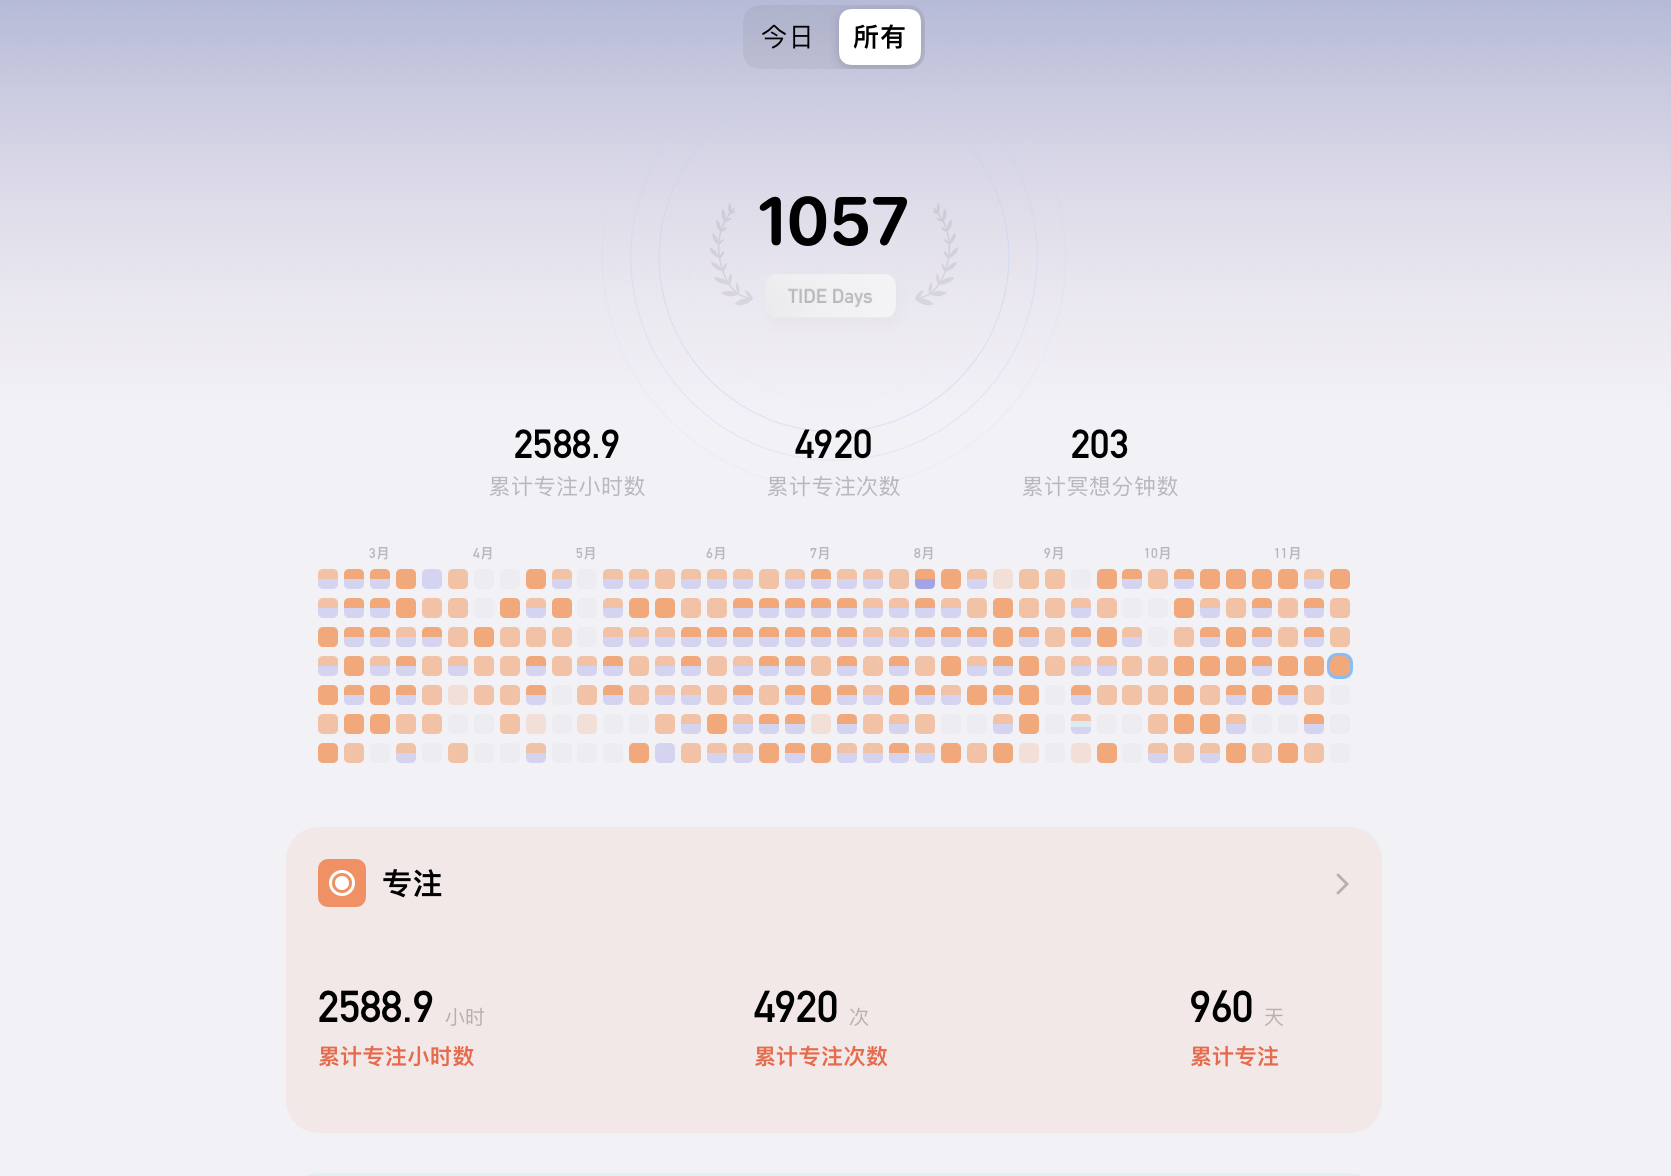 我日常會藉助潮汐 app 來專注、做時間管理，目前累計專注有 2500+ 小時了